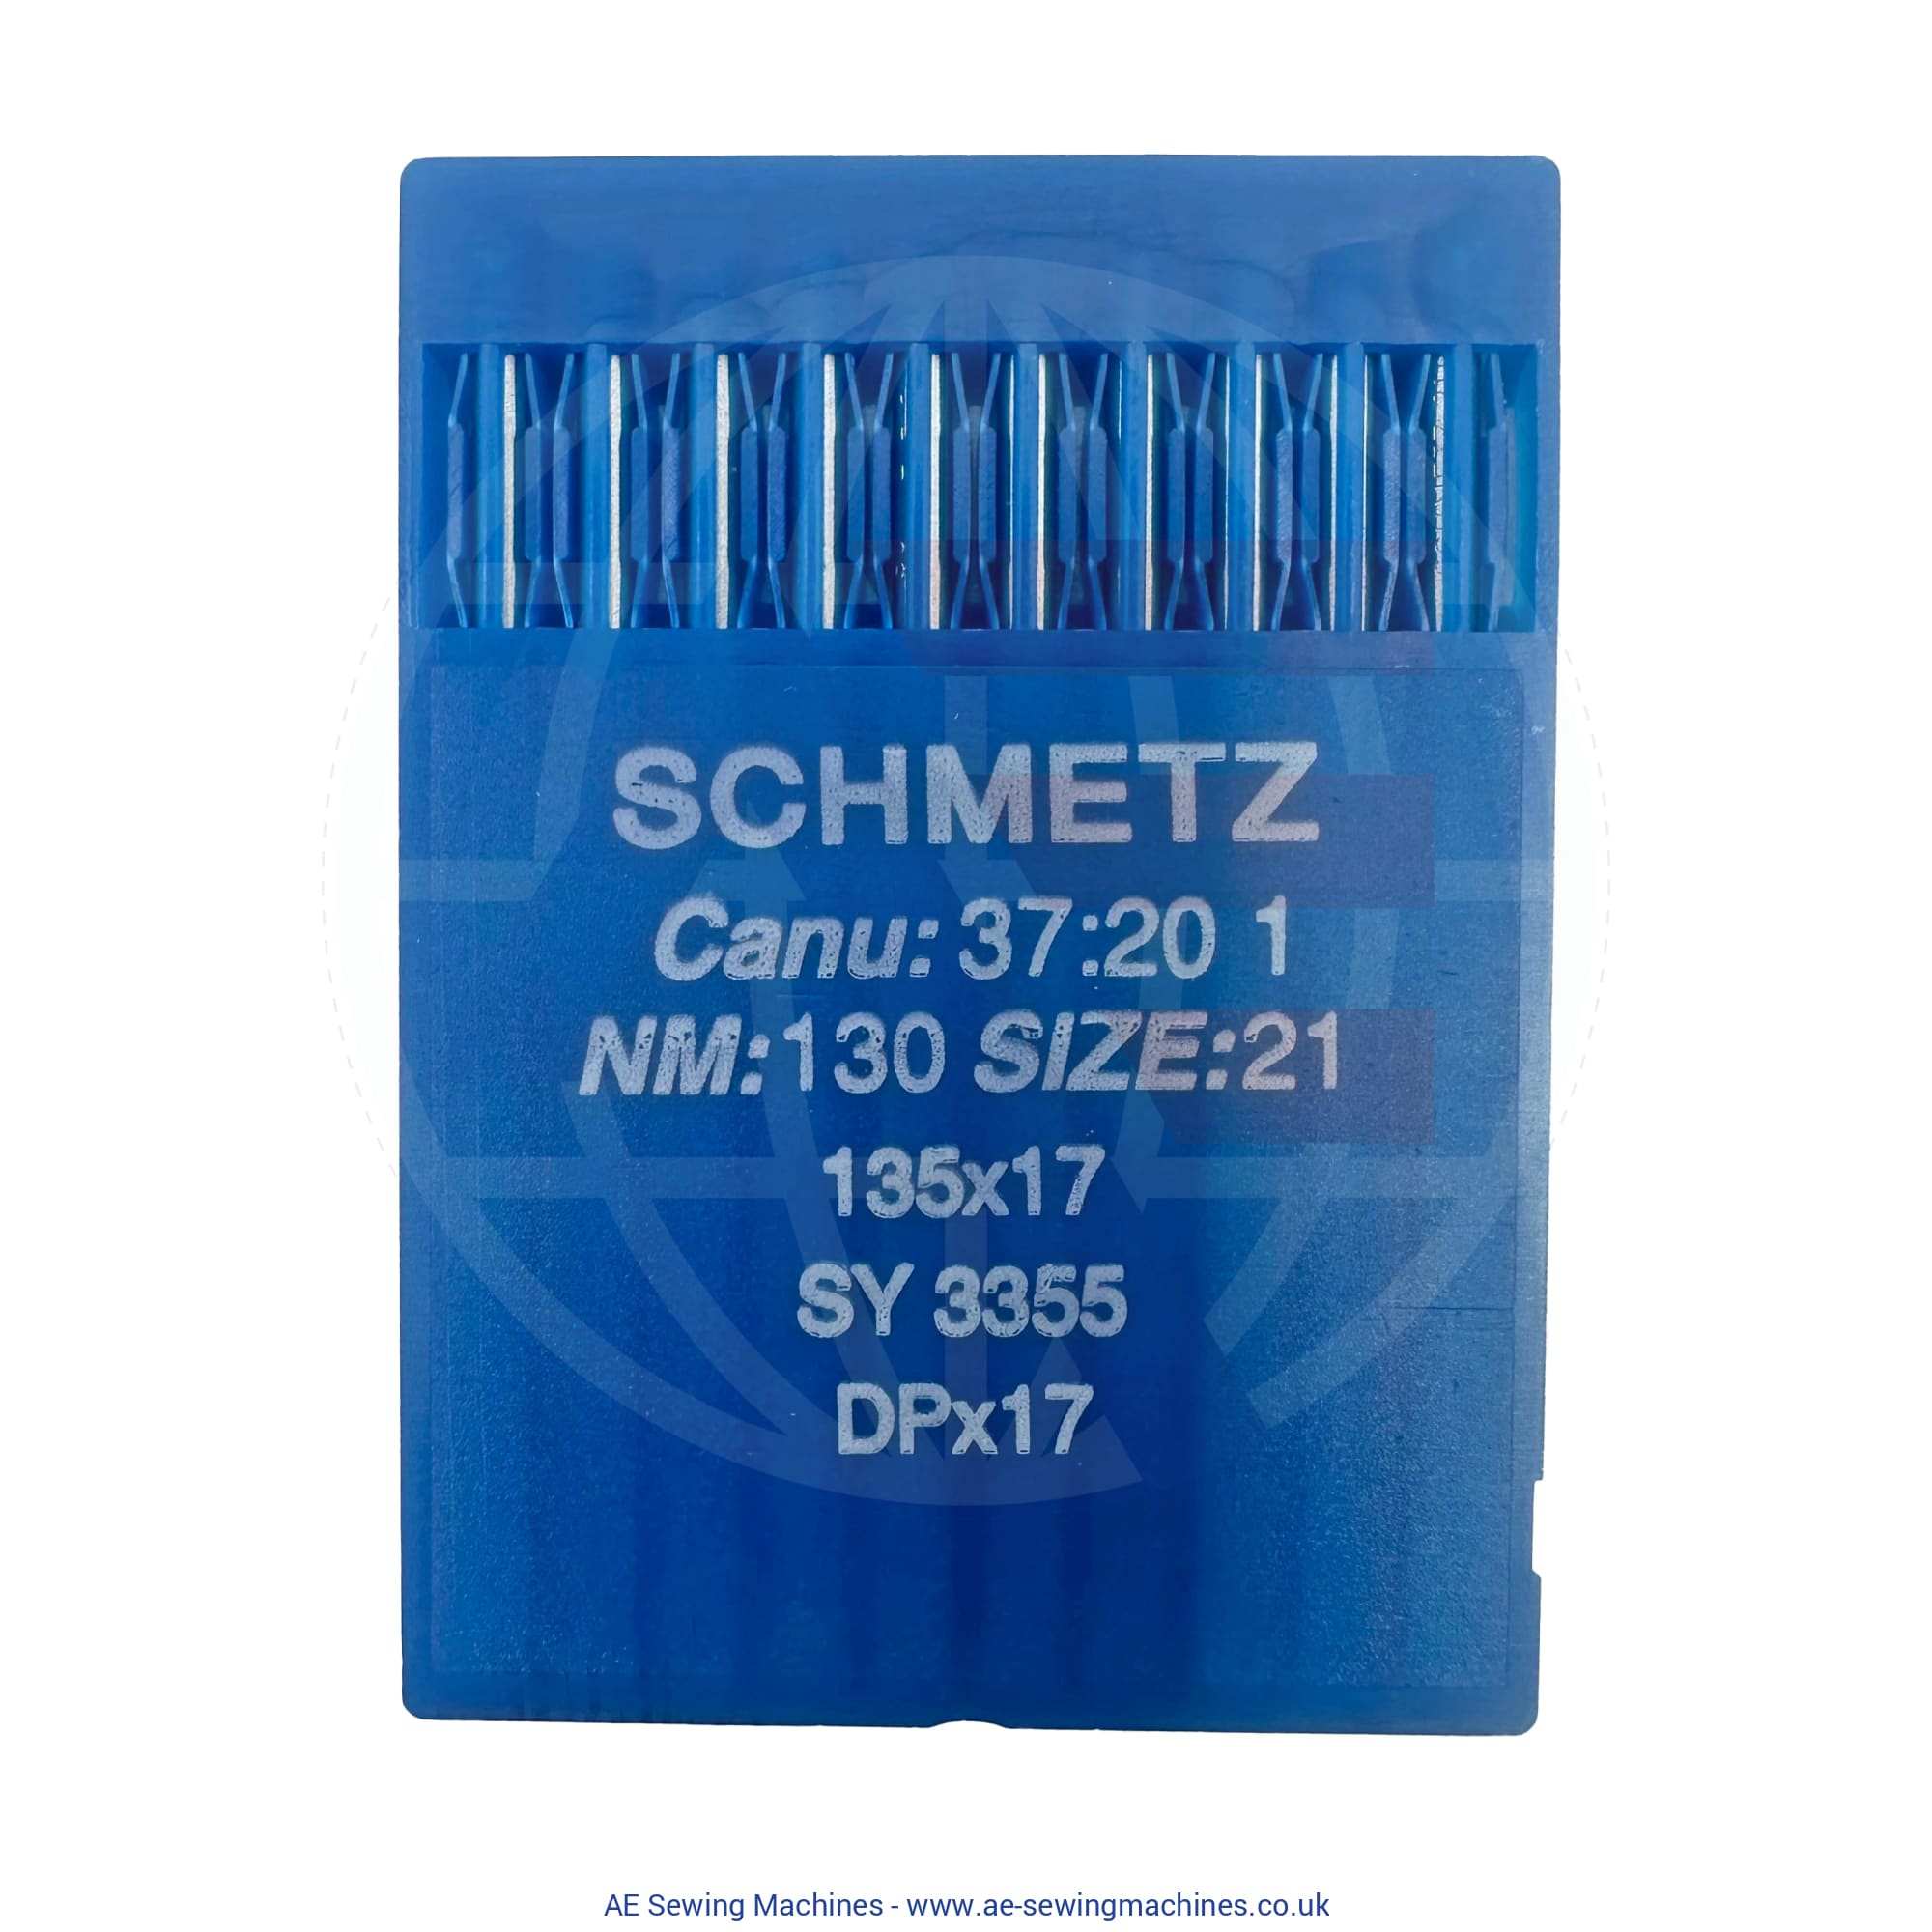 Schmetz 135X17 Regular Point Needles 130 Sewing Machine